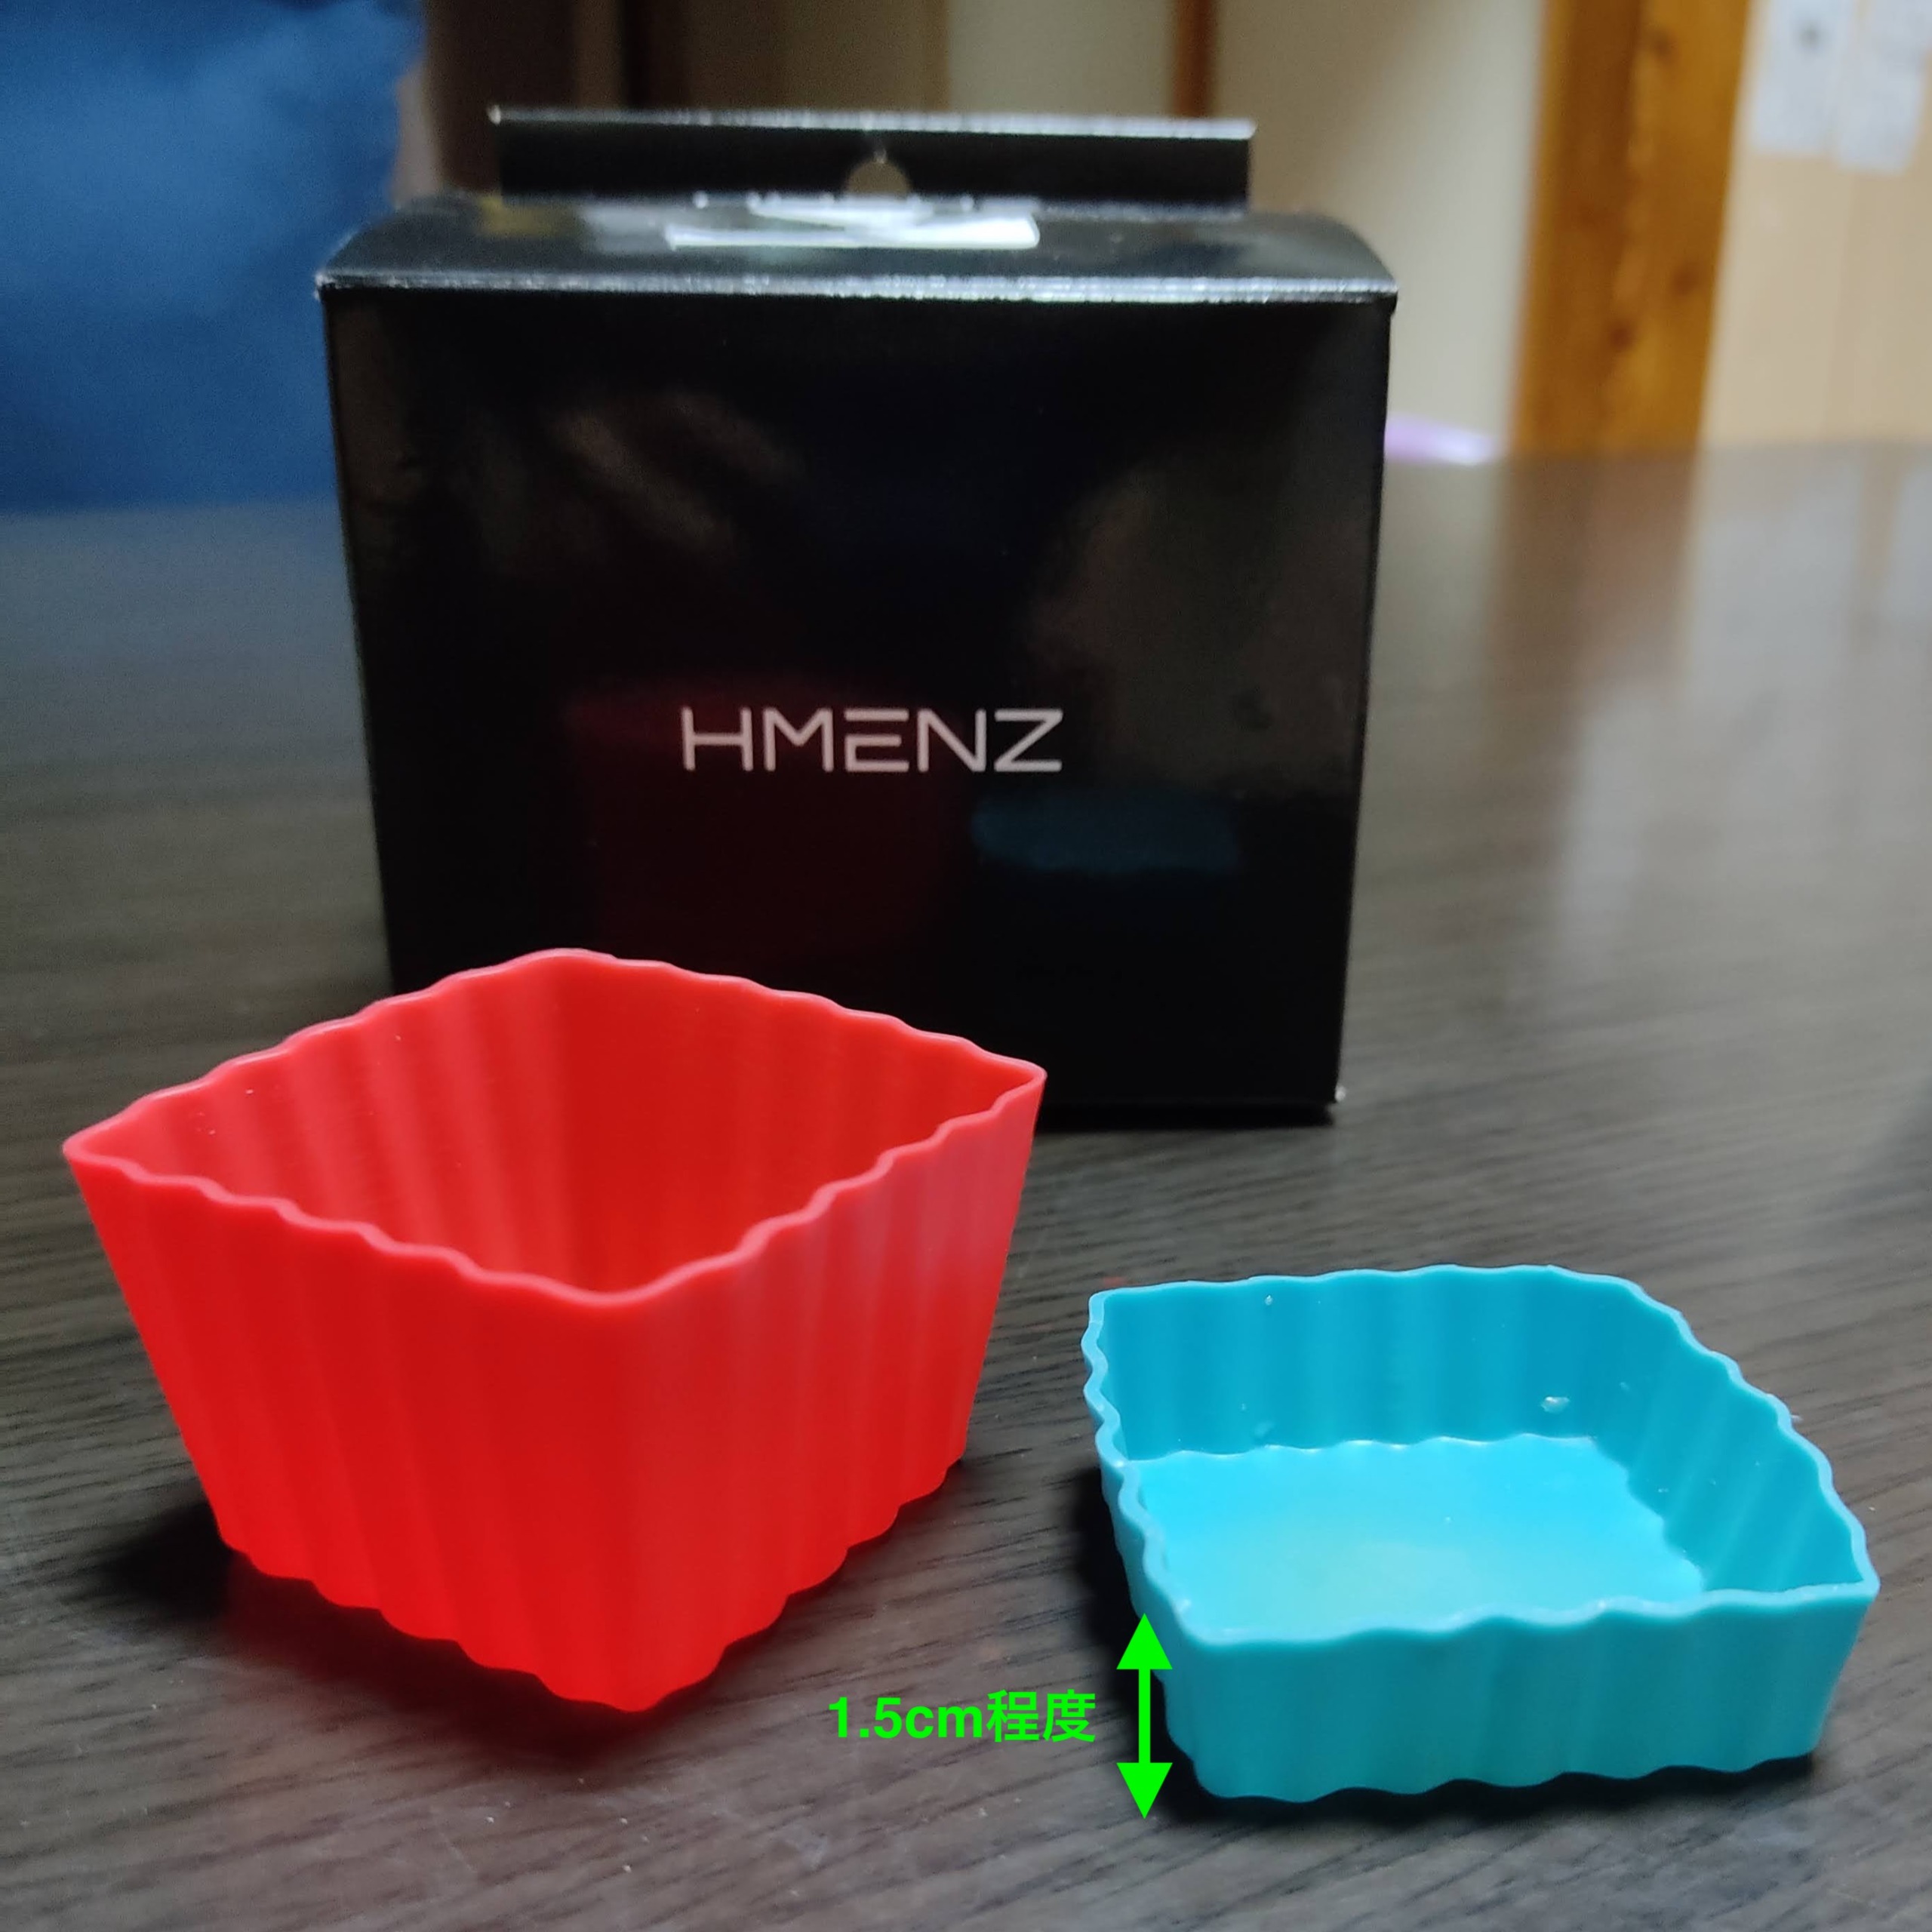 HMENZのワックスを入れるカップの画像